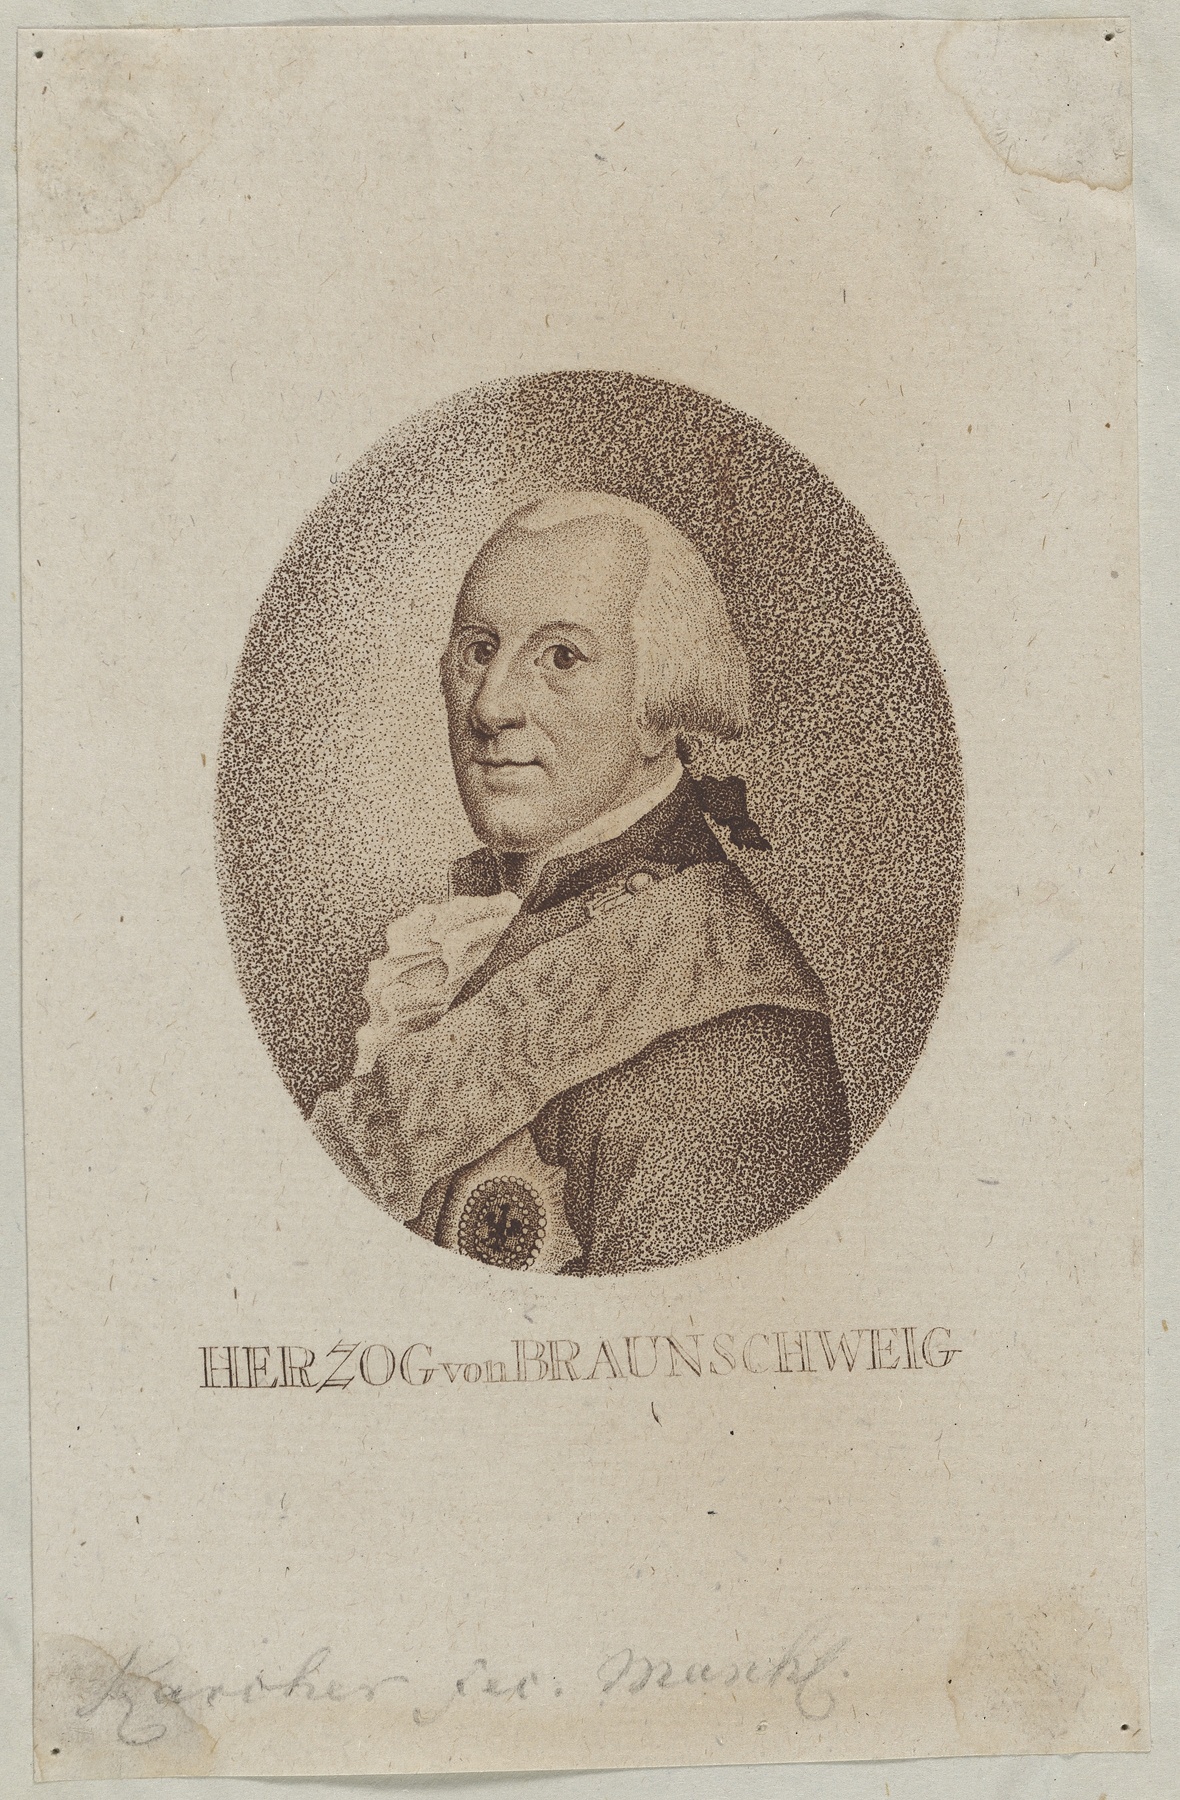 Bildnis des Karl Wilhelm Ferdinand, Herzog von Braunschweig-Lüneburg-Wolfenbüttel (Gleimhaus Halberstadt CC BY-NC-SA)